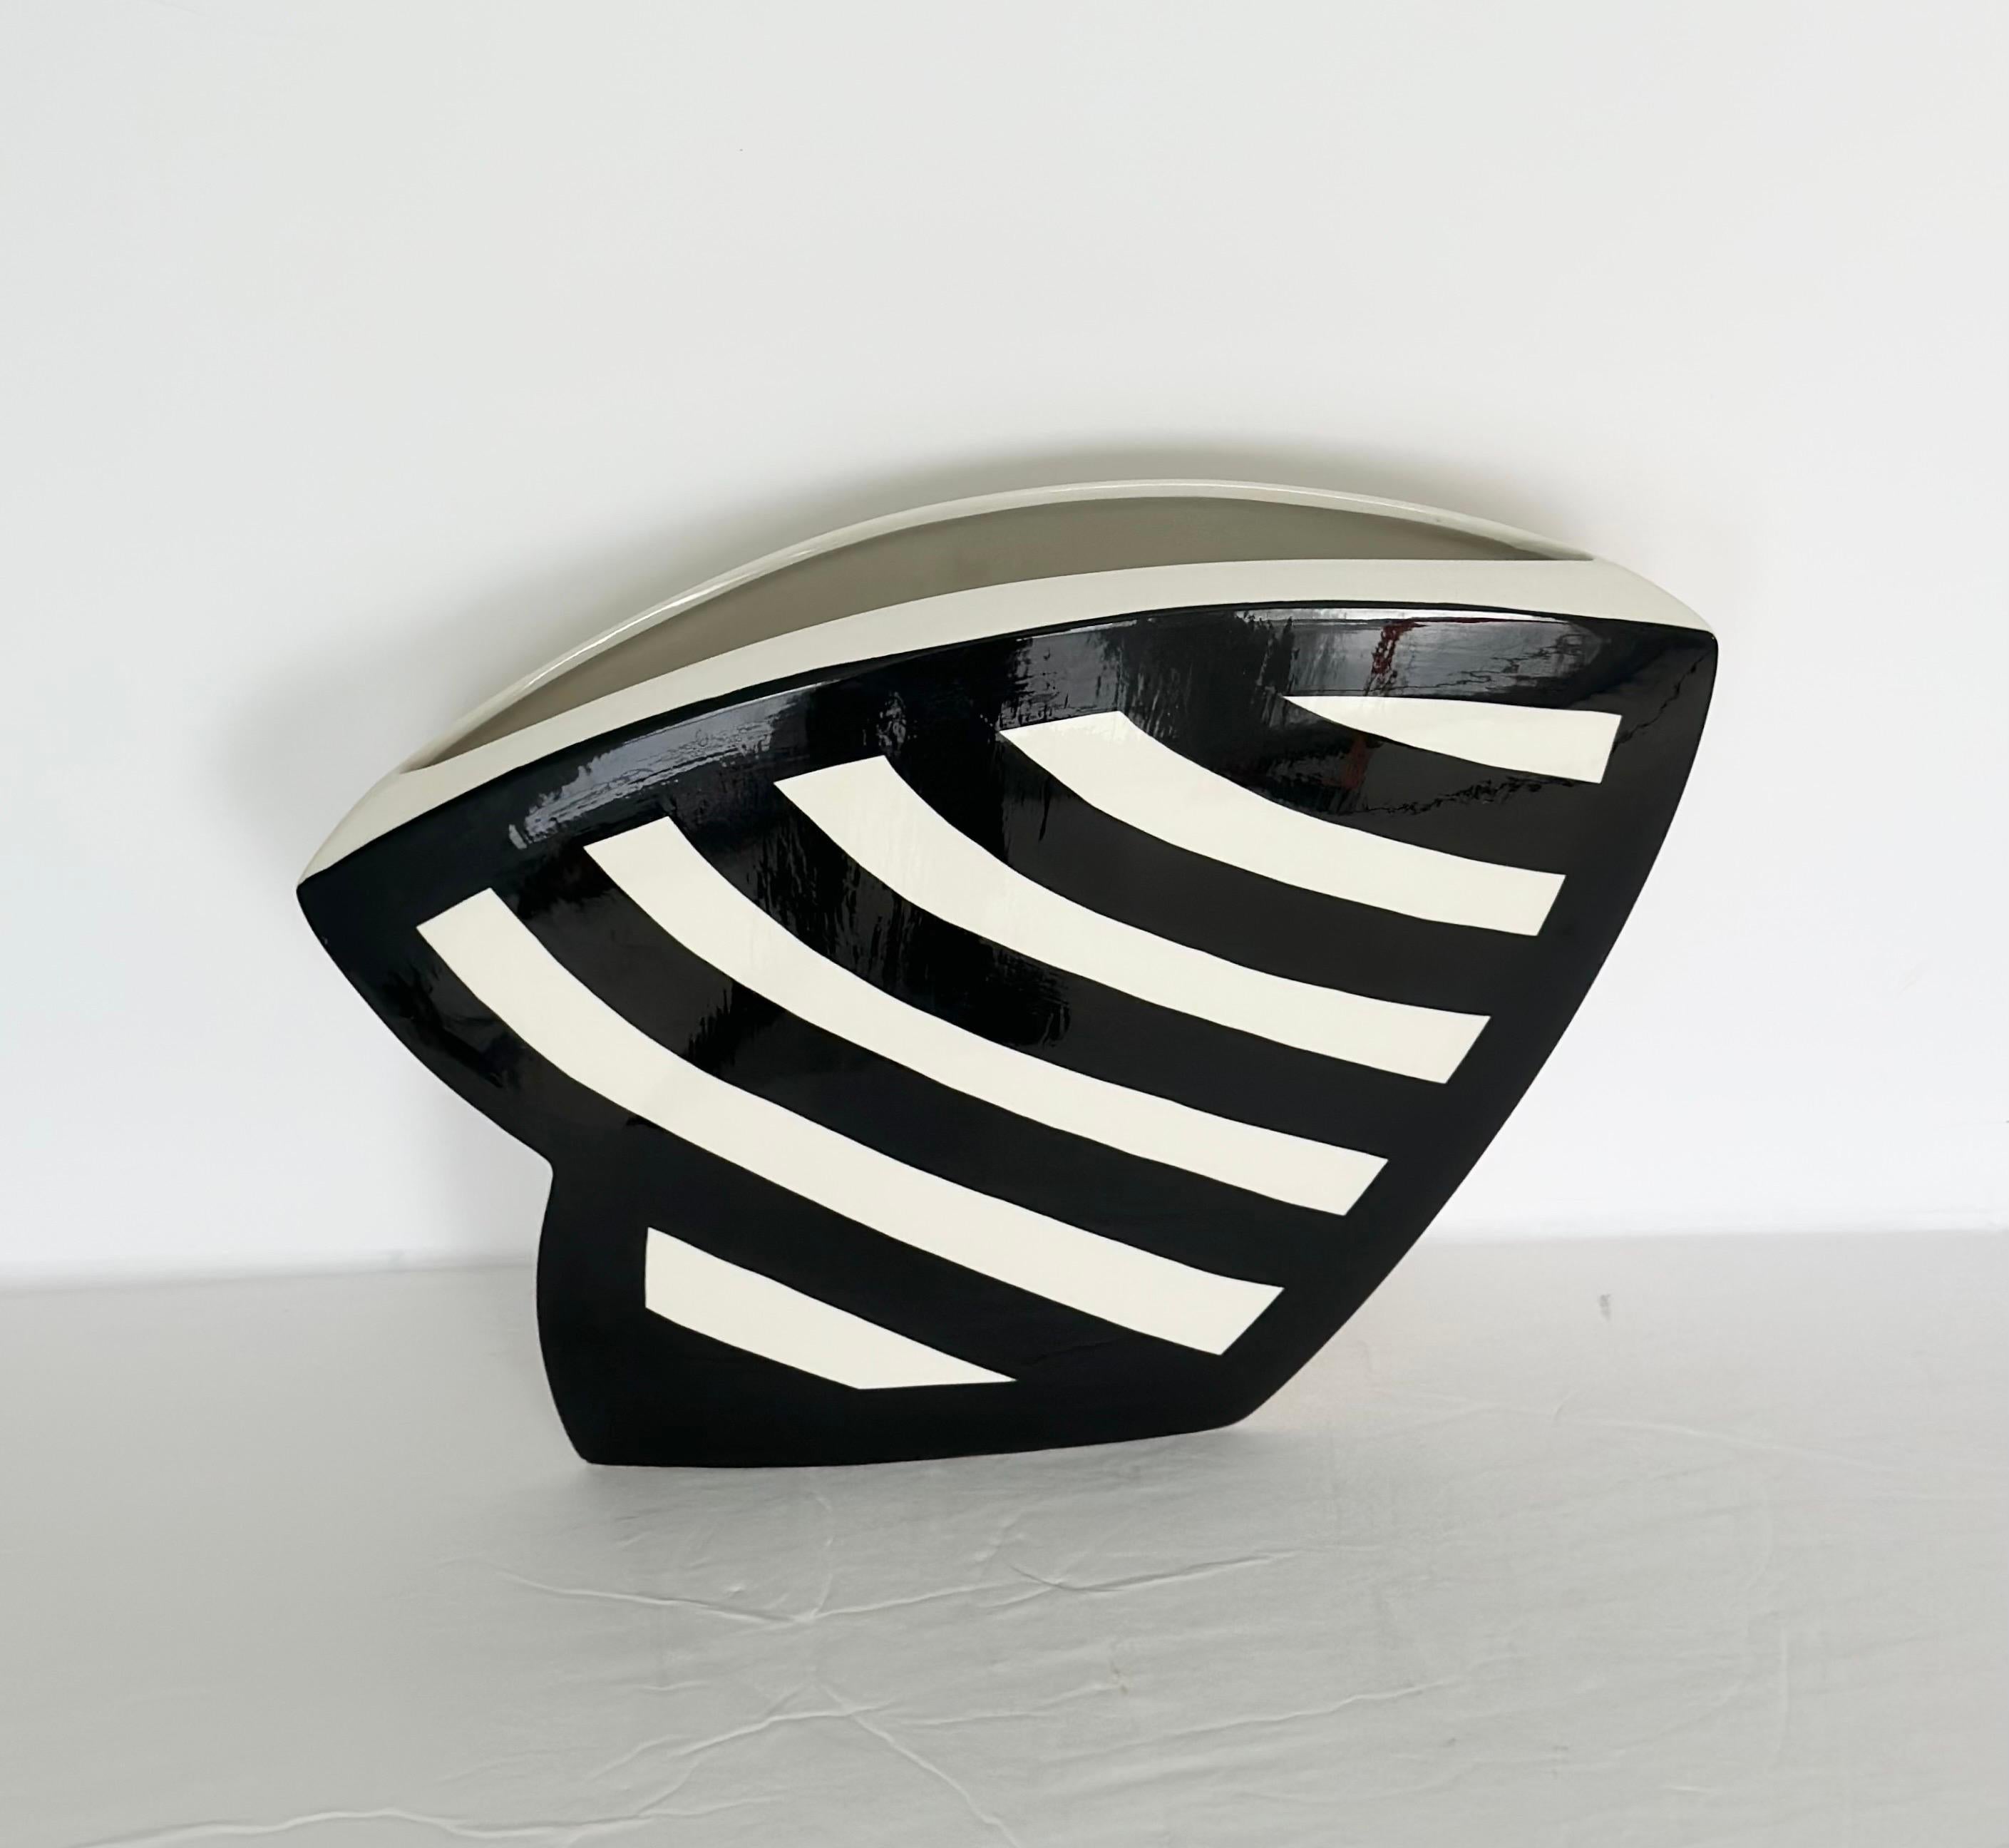 Wir freuen uns sehr, Ihnen eine atemberaubende Keramikvase des Designers John Bergen aus den 1990er Jahren anbieten zu können.  Diese Keramikvase verkörpert mit ihrer amorphen Form postmoderne Attribute, indem sie eine traditionelle Symmetrie